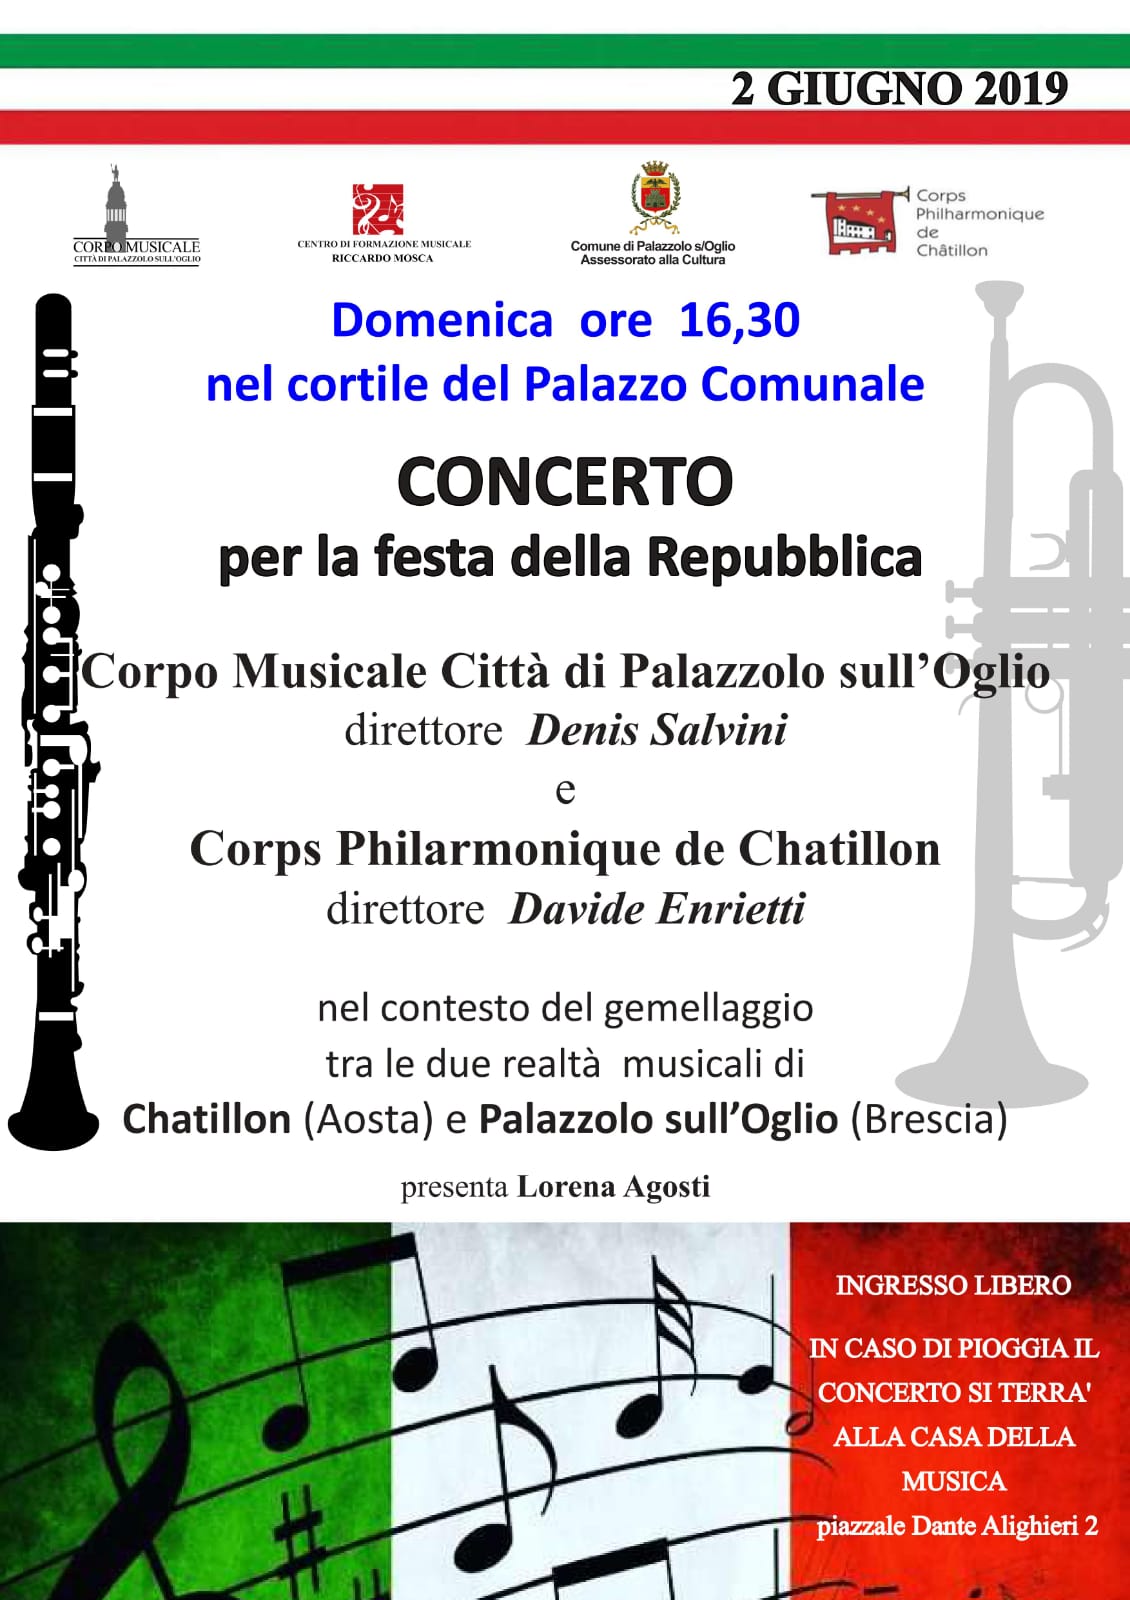 02/06 – Concerto per la festa della Repubblica